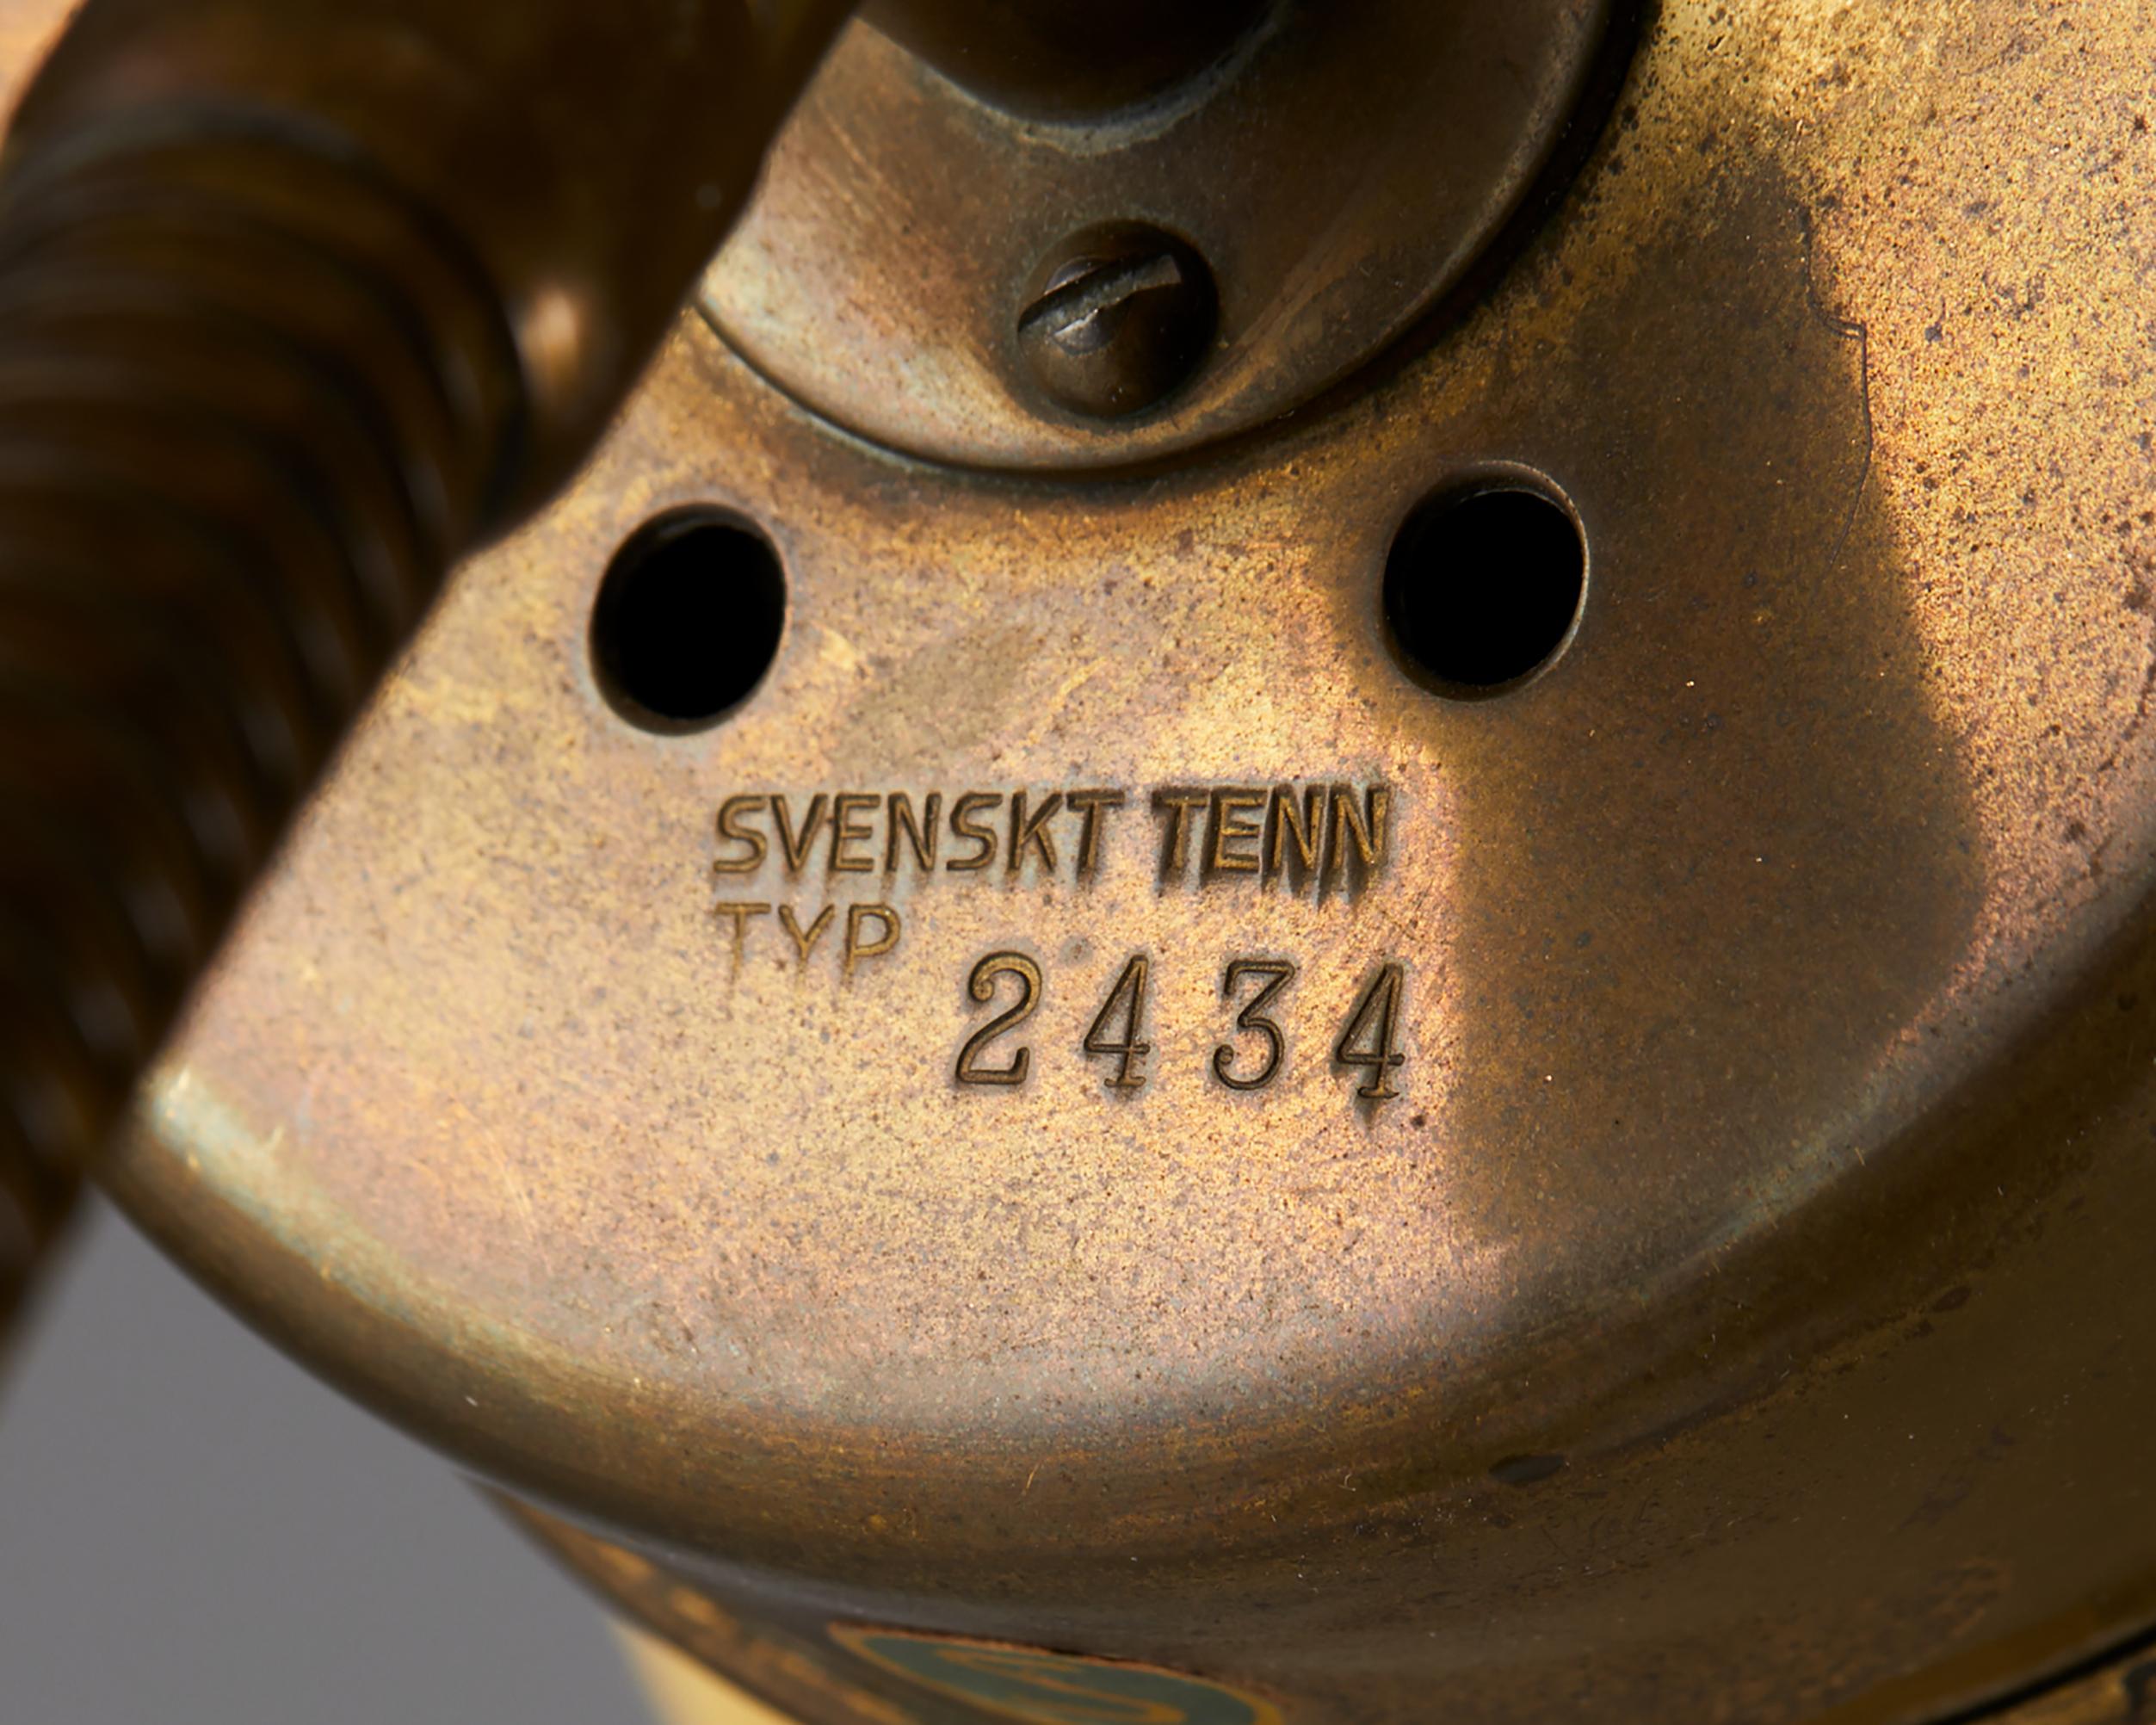 Table Lamp Model 2434 Designed by Josef Frank for Svenskt Tenn 2